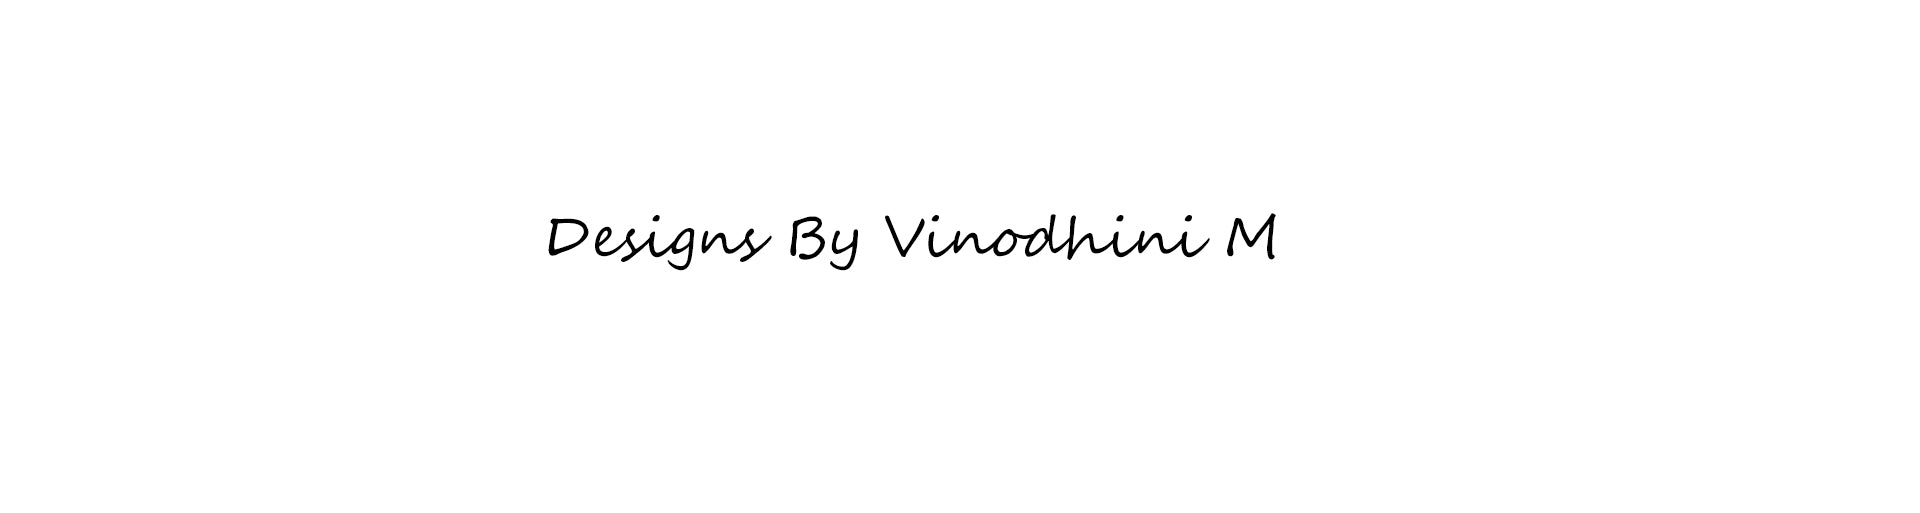 Vinodhini M